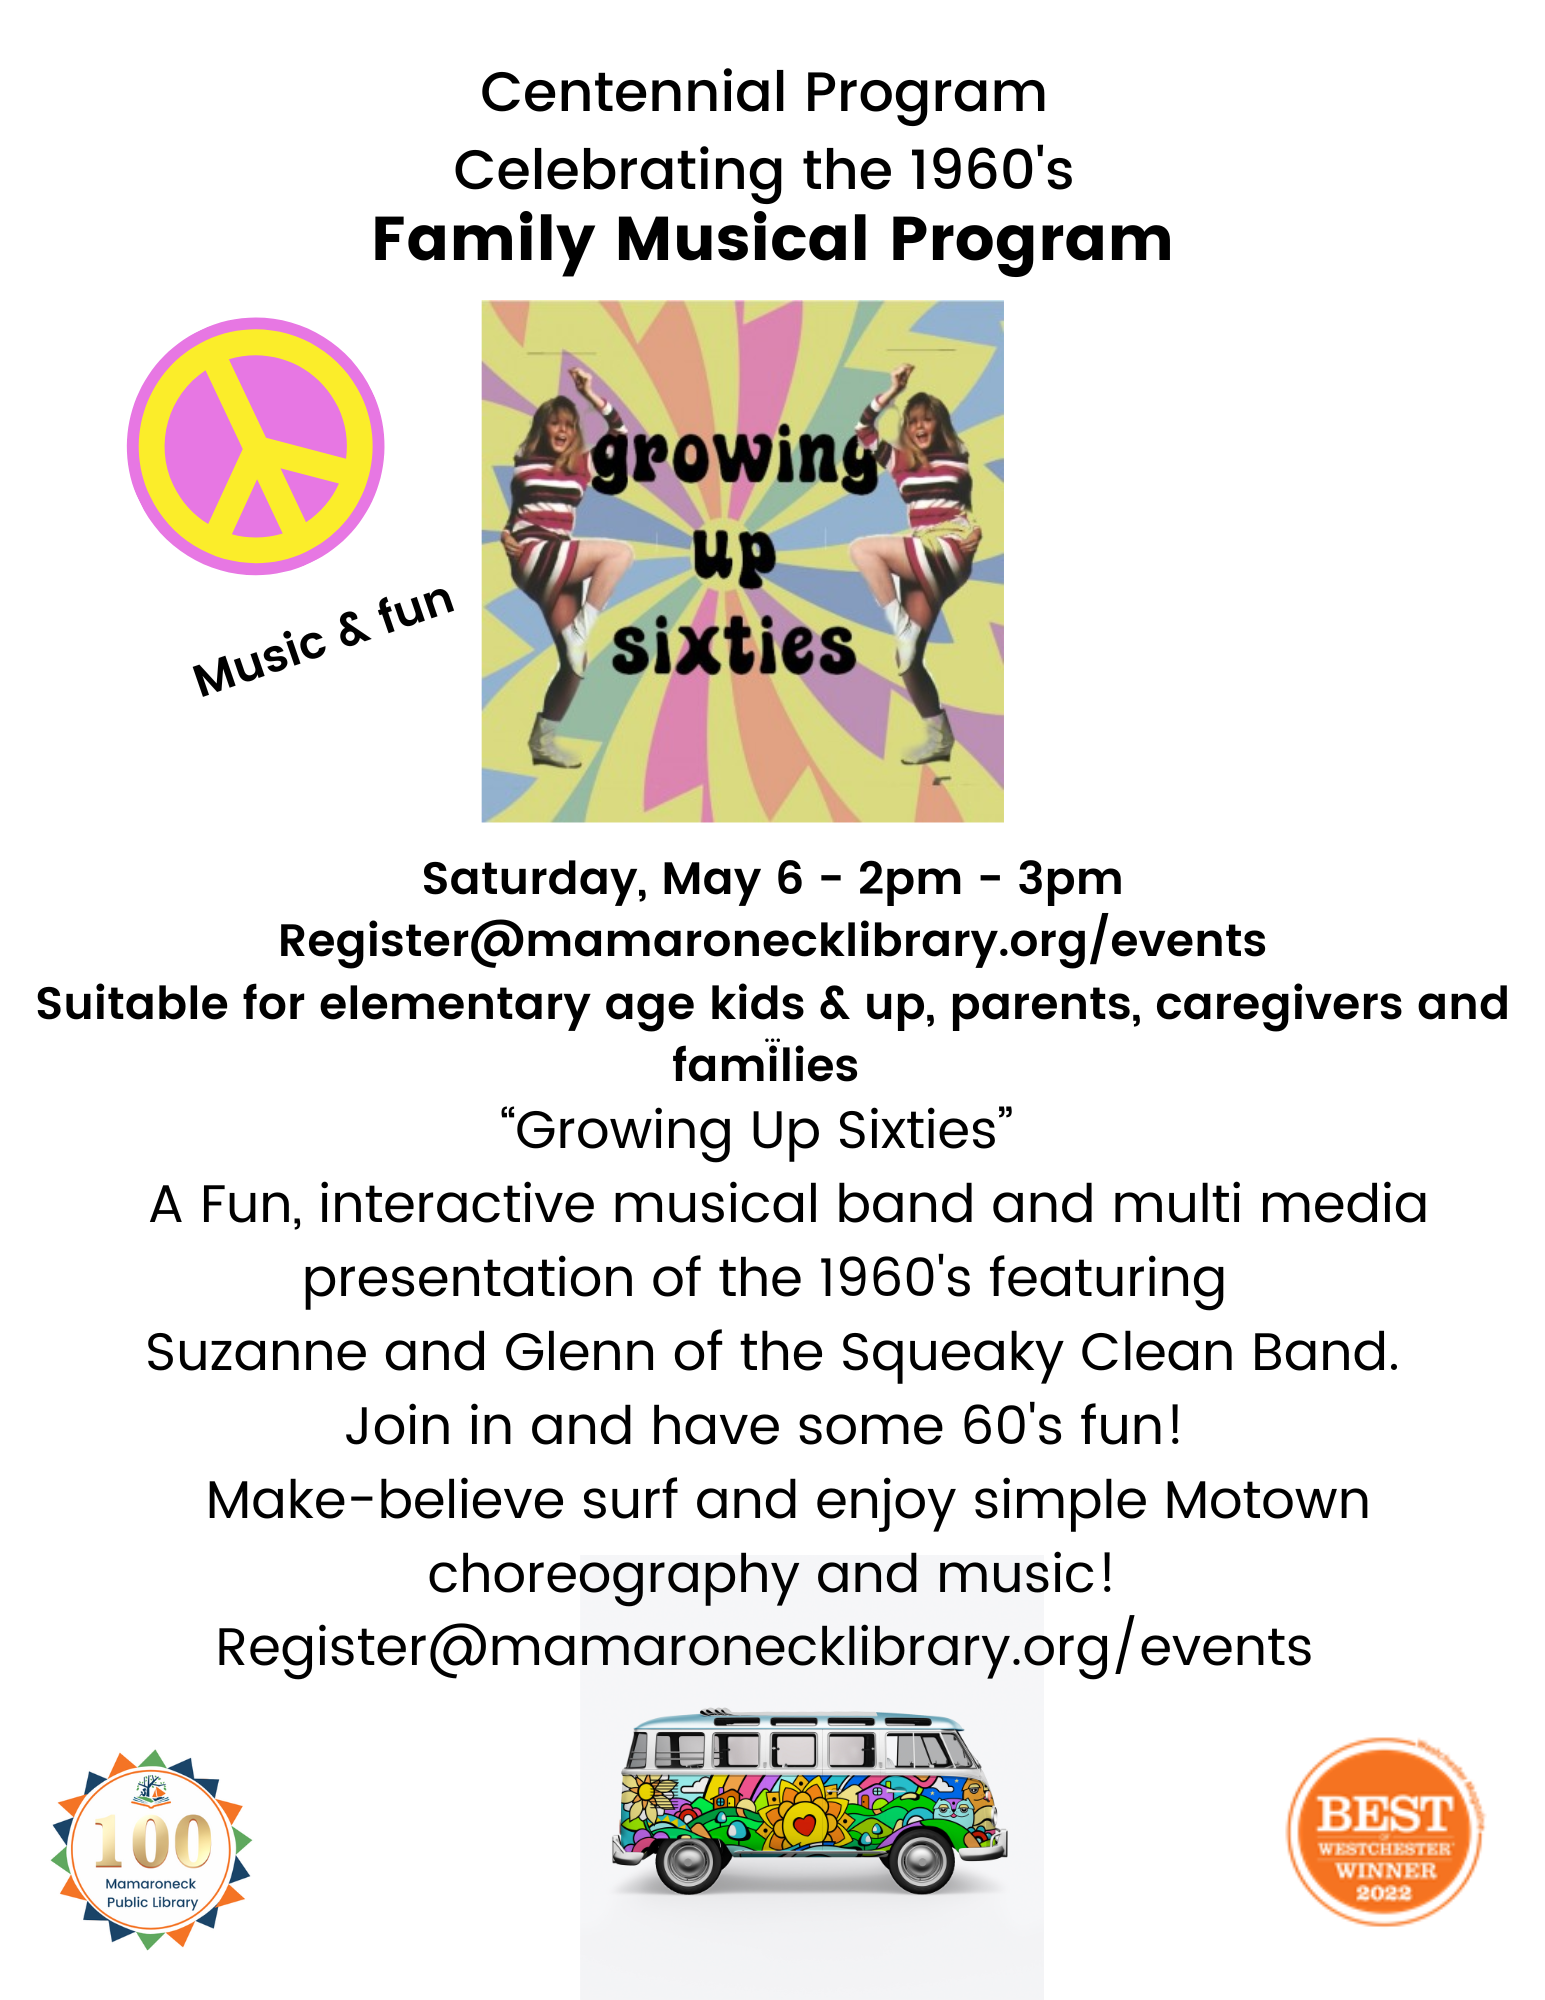 5/6 @ 2-3pm - Family Musical Program: Celebrating 1960s - music and dance for children